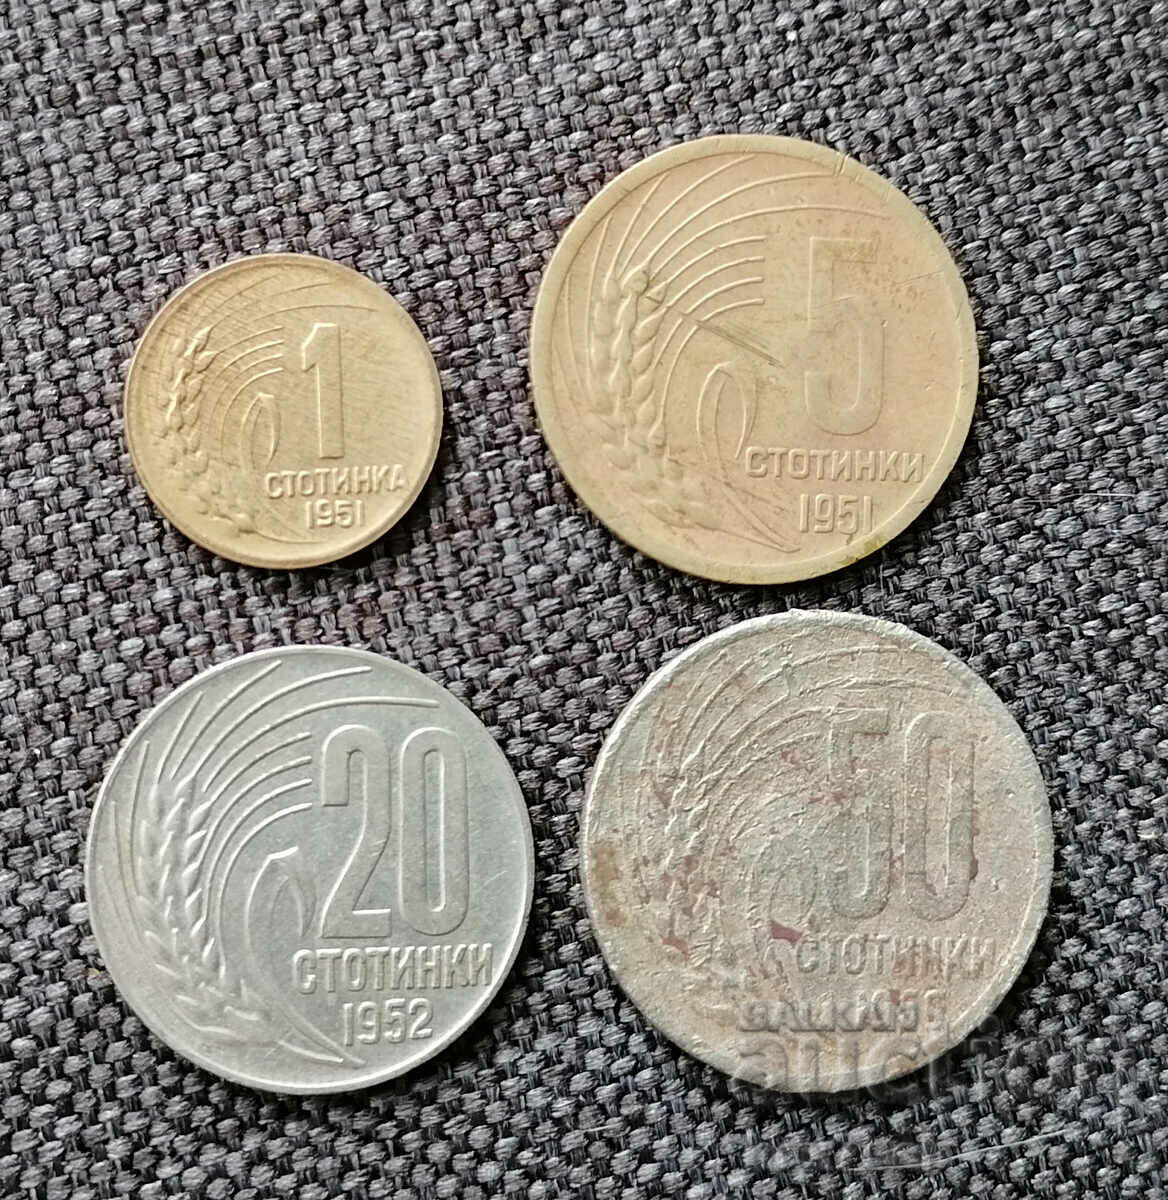 Мо ⭐ Lot of coins Bulgaria 1951 1959 4pcs ⭐ ❤️